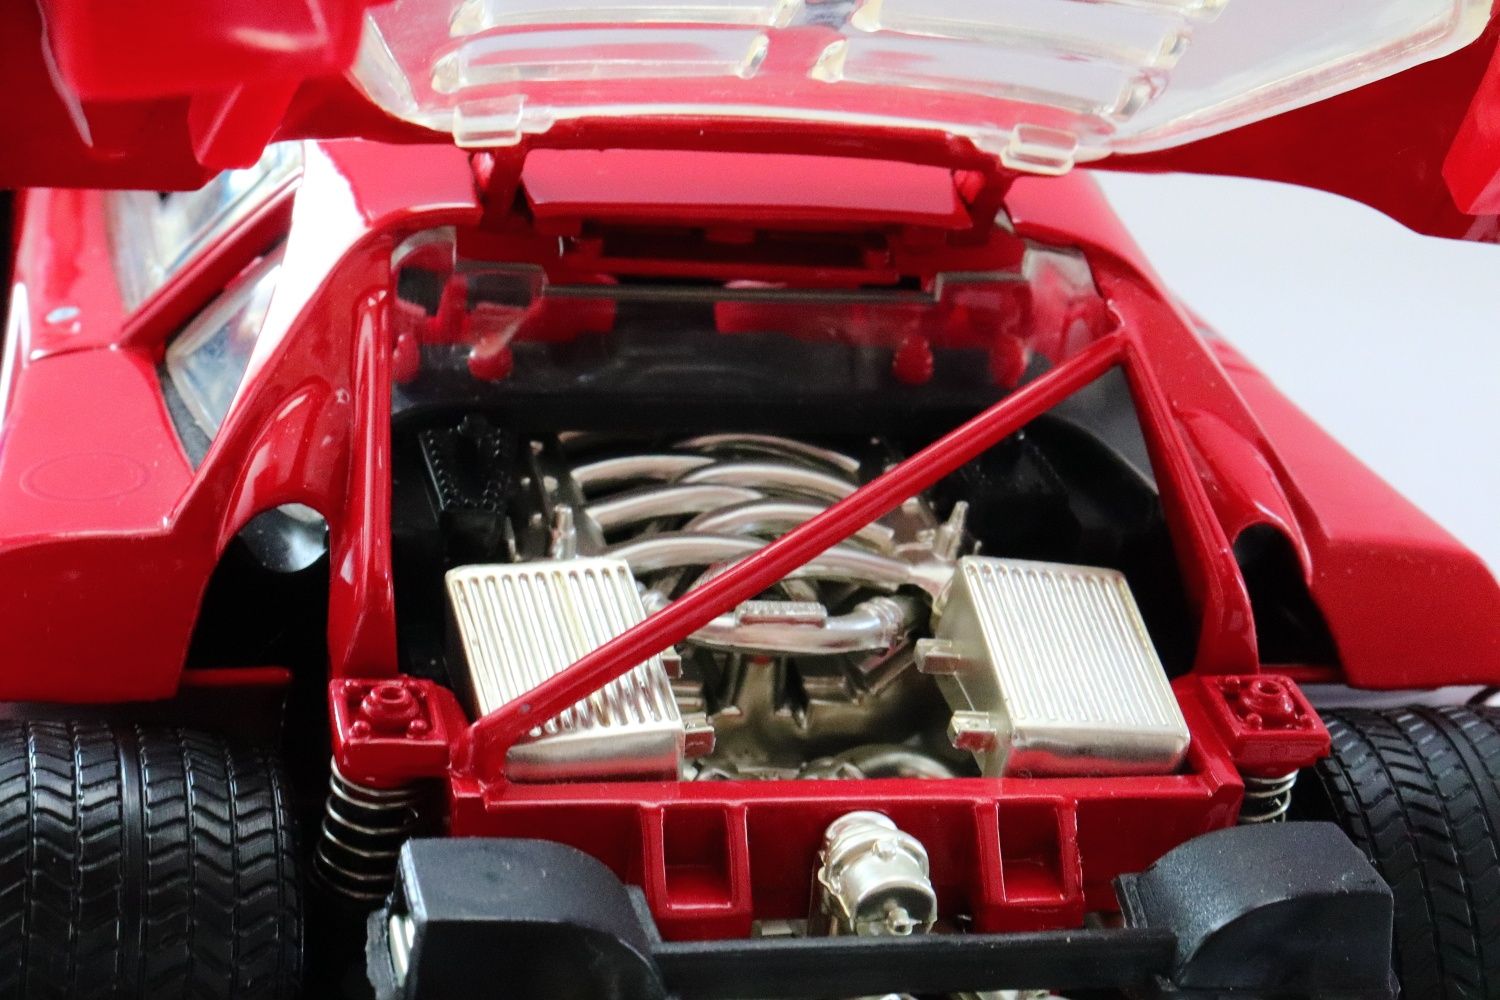 Ferrari F40 1:18